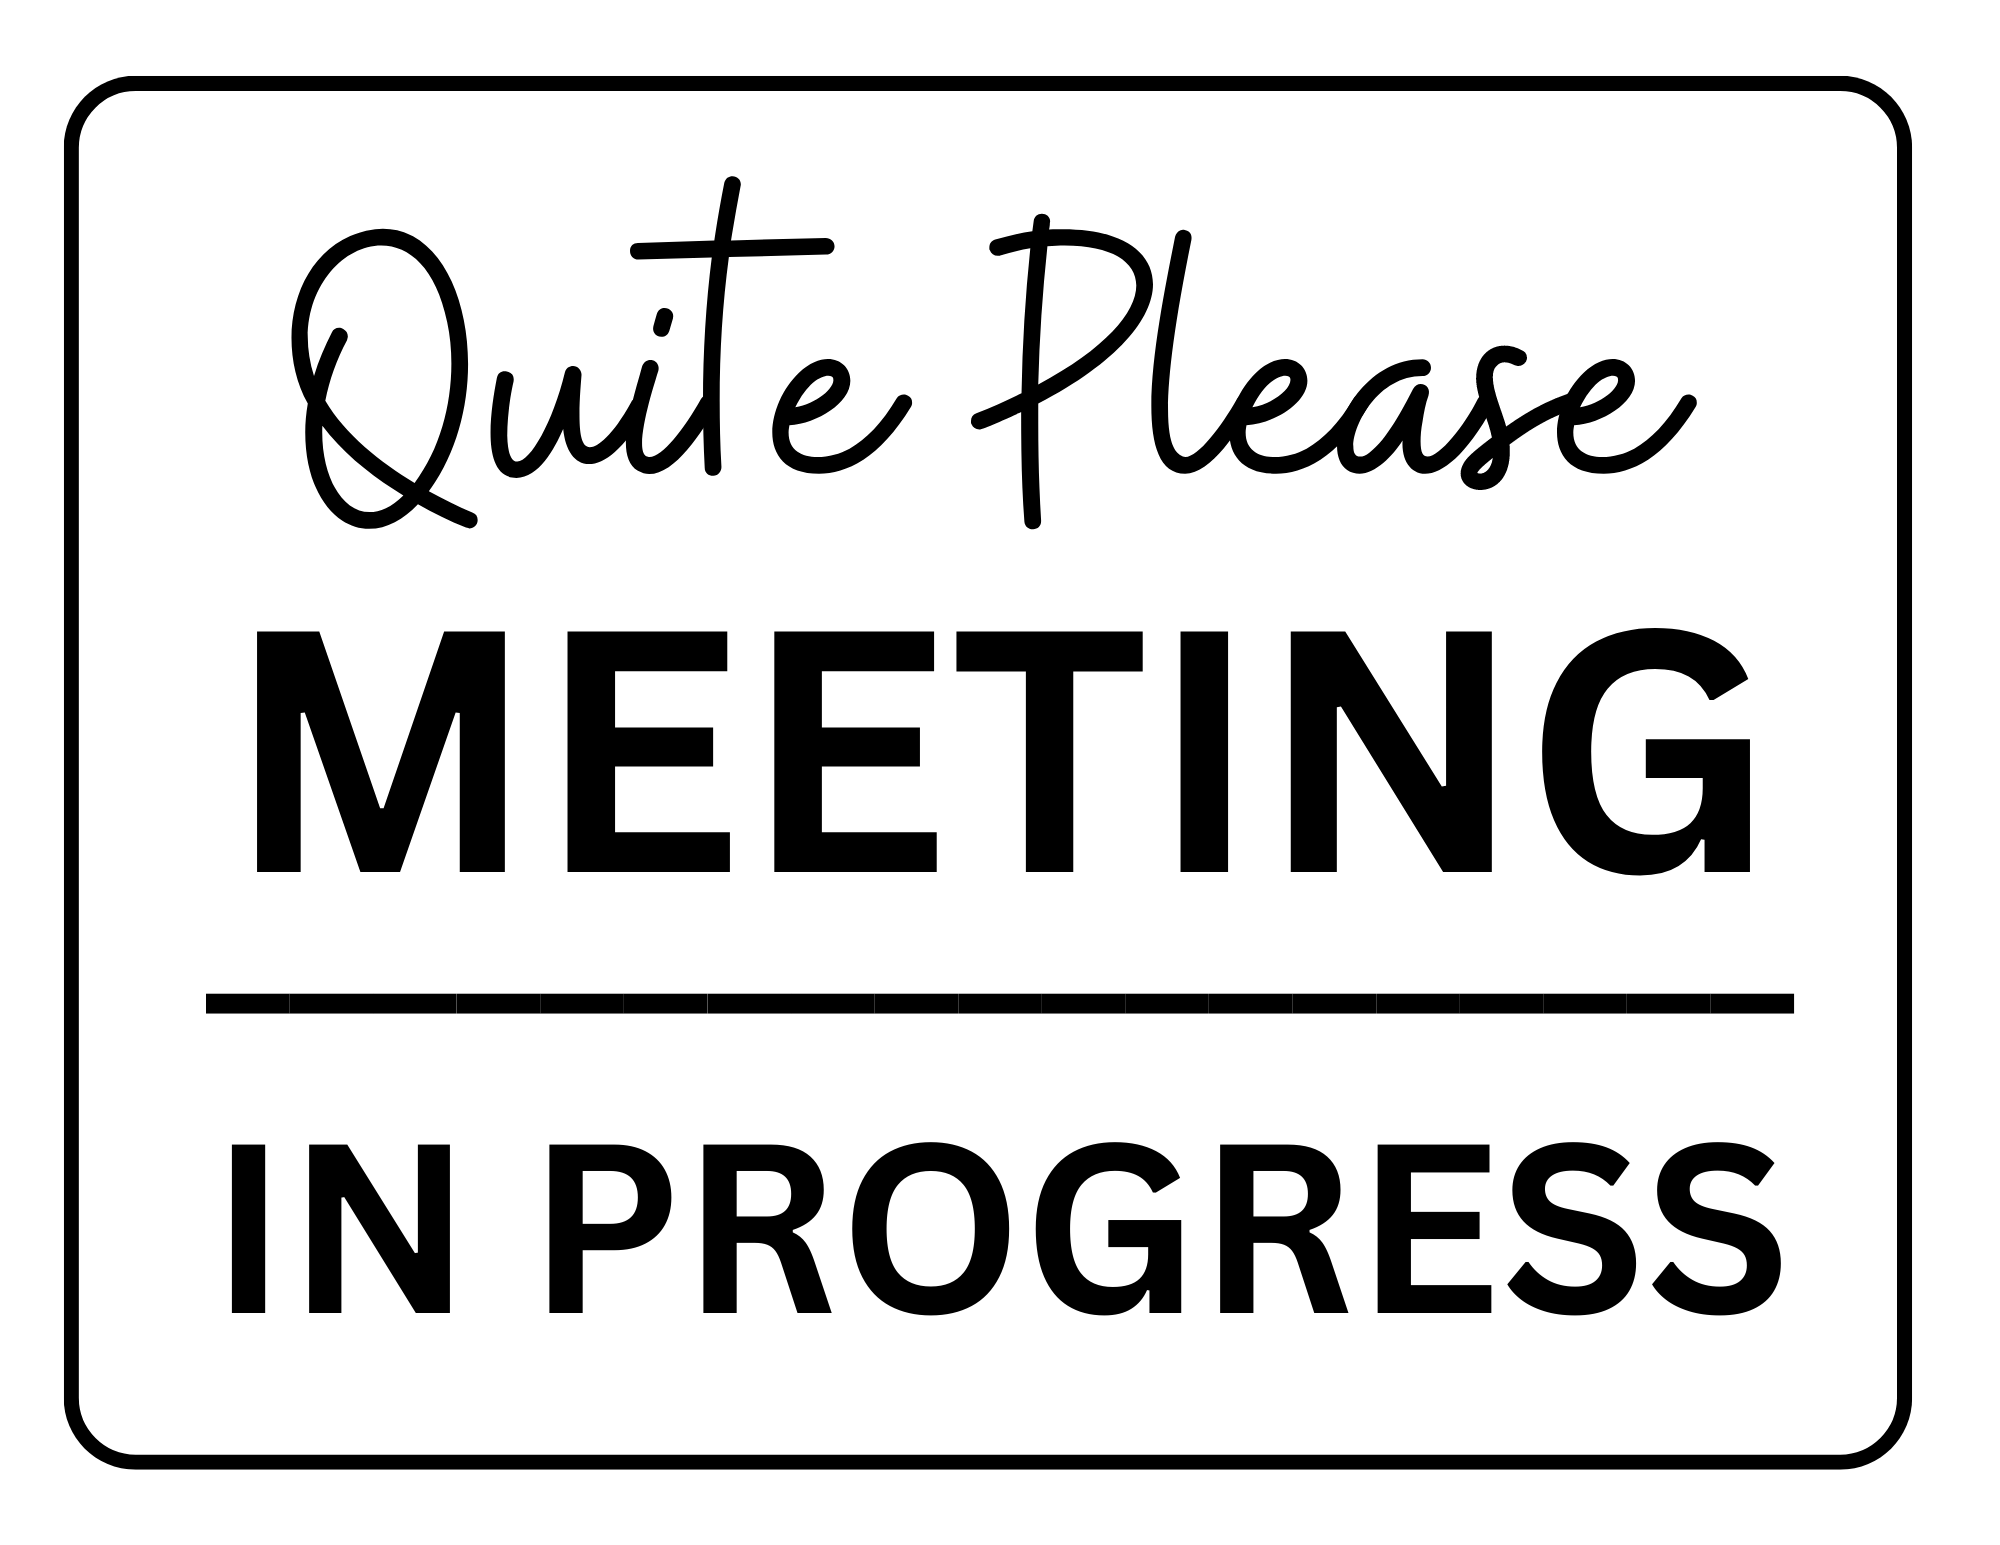 quiet please meeting in progress sign